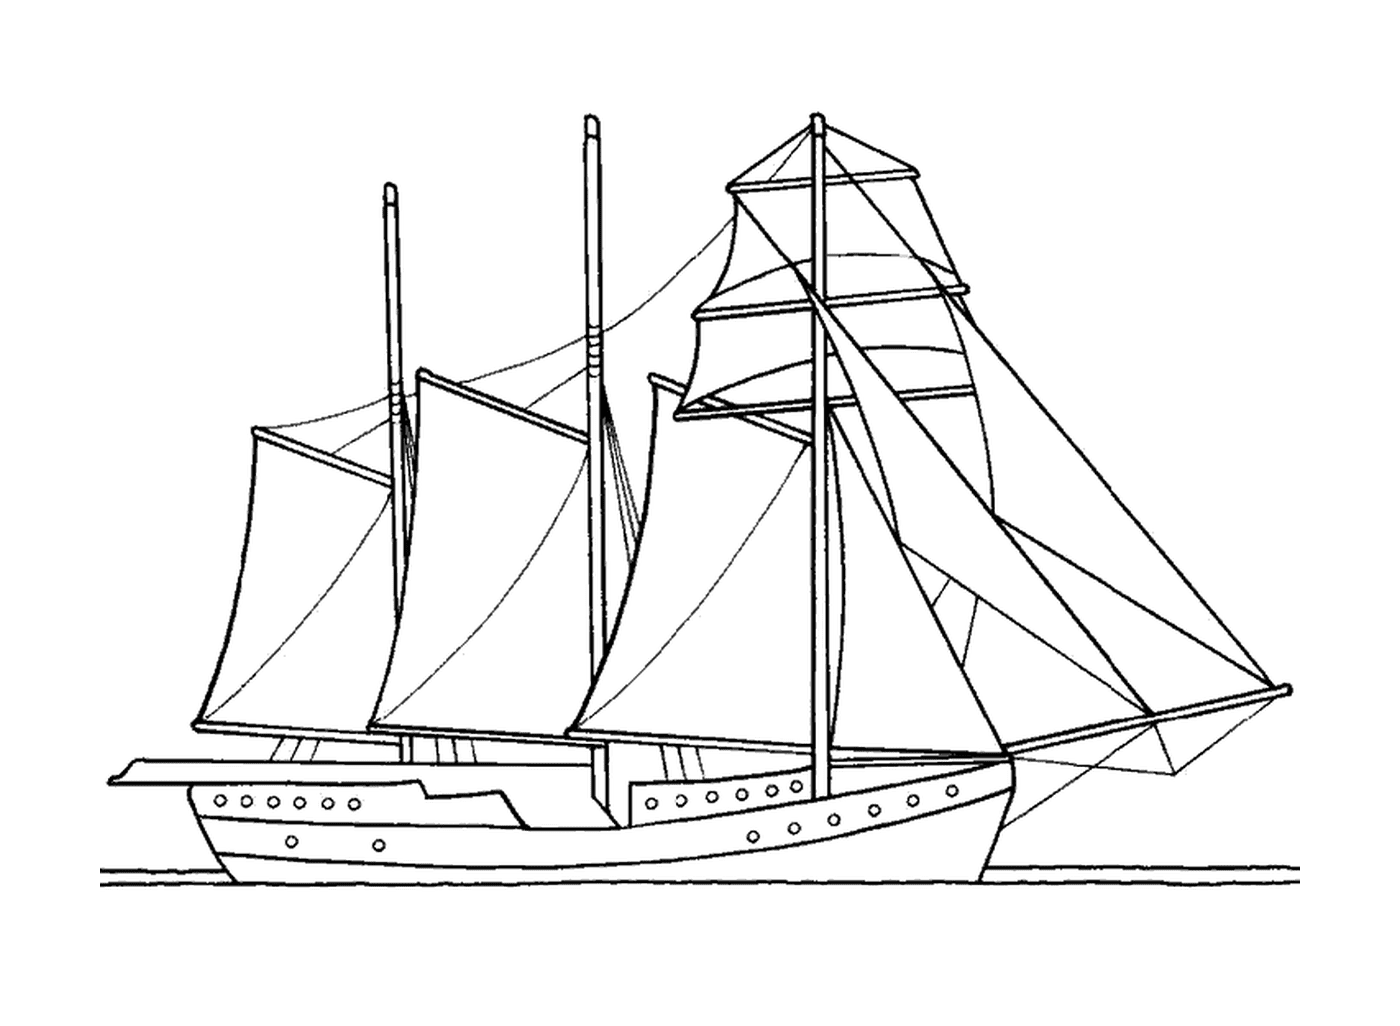  一艘三波帆船 